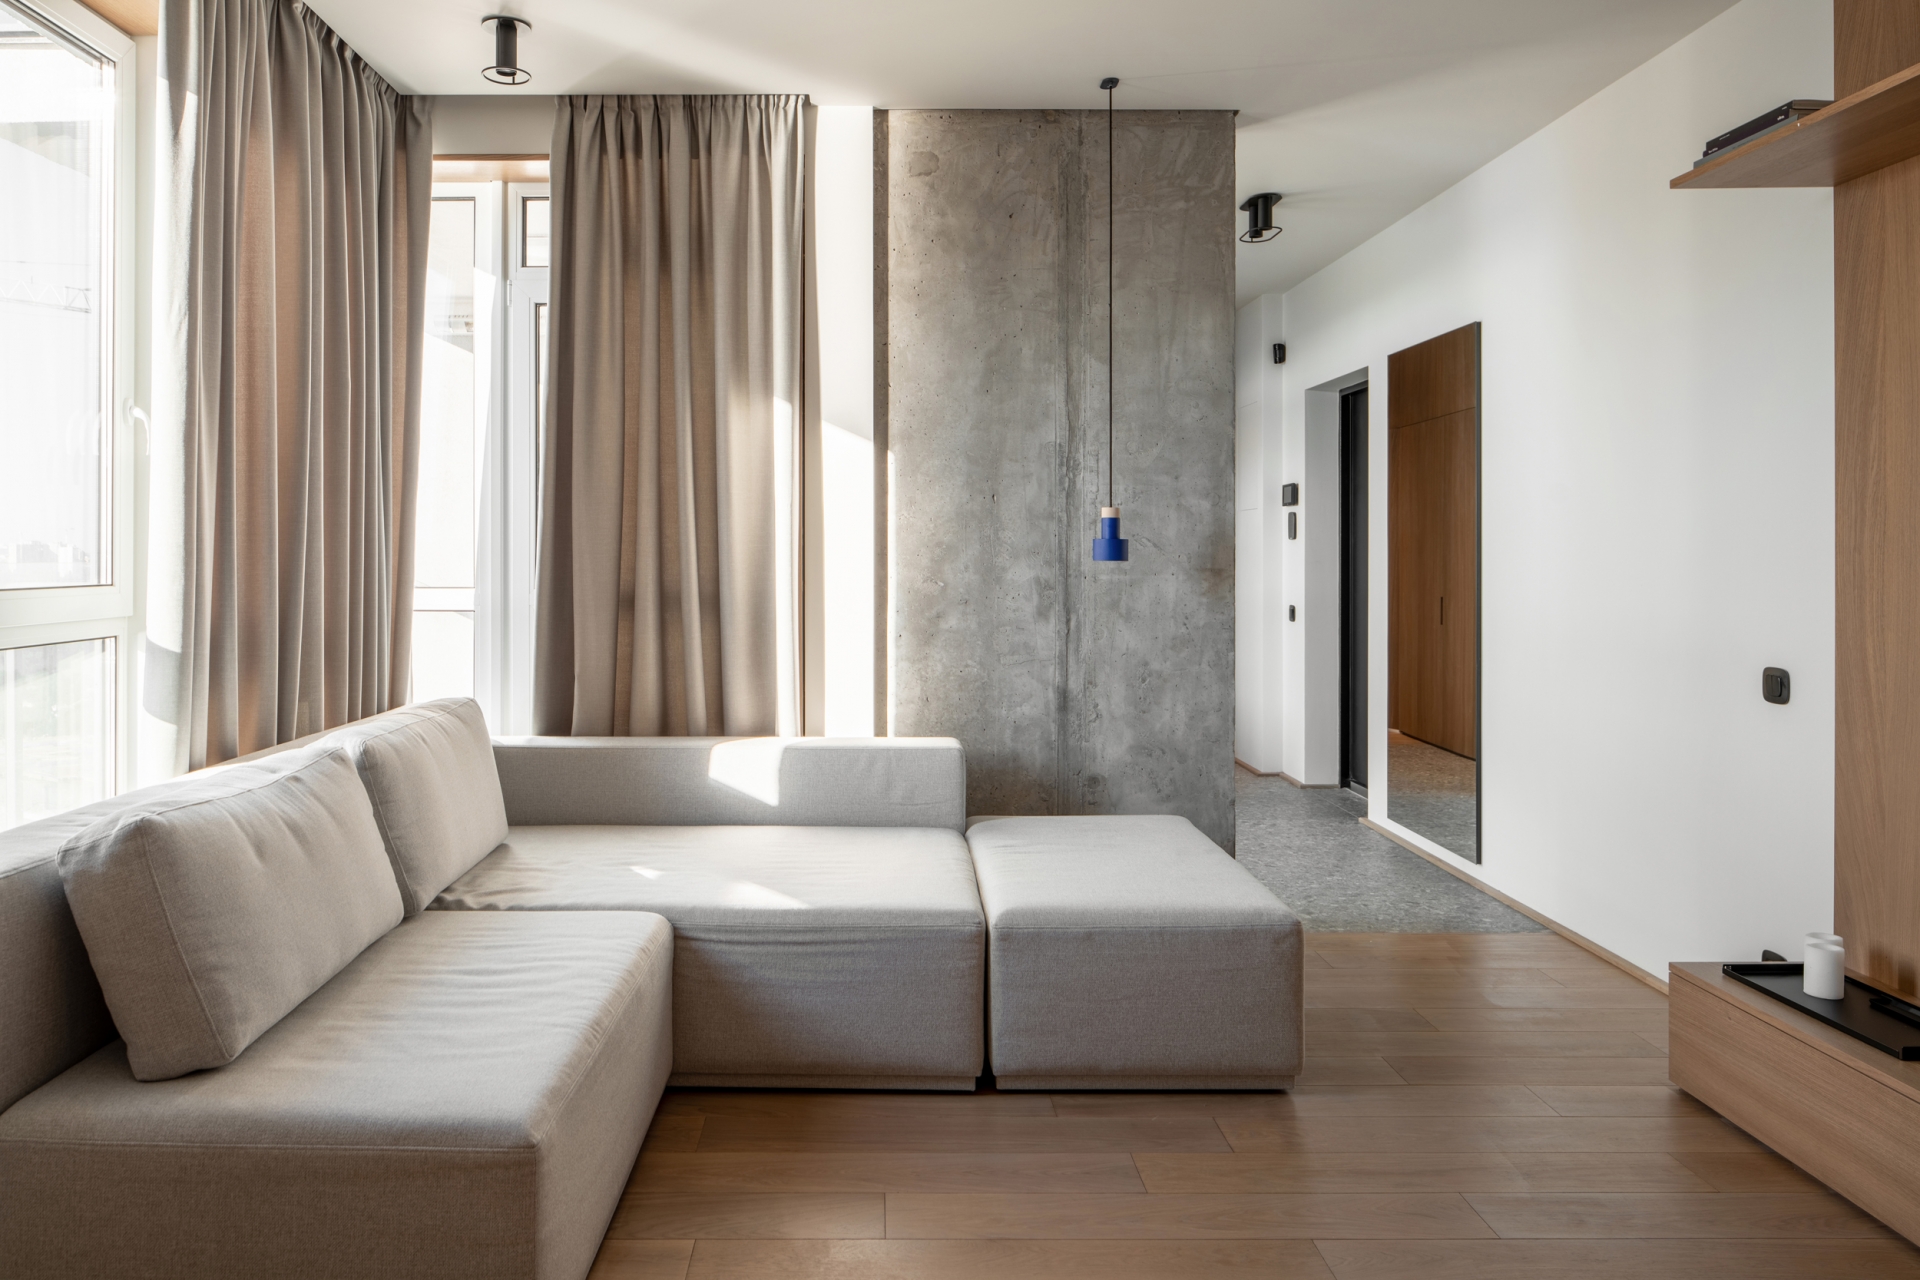 Về cơ bản, bê tông và gỗ dễ dàng kết hợp với các sắc màu nội thất khác nhau trong cùng một không gian. Ở đây, NTK đã tối giản cả về nội thất lẫn màu sắc với sofa module và rèm cửa màu be, loại bỏ bàn nước cho phòng khách giản dị nhất có thể. 